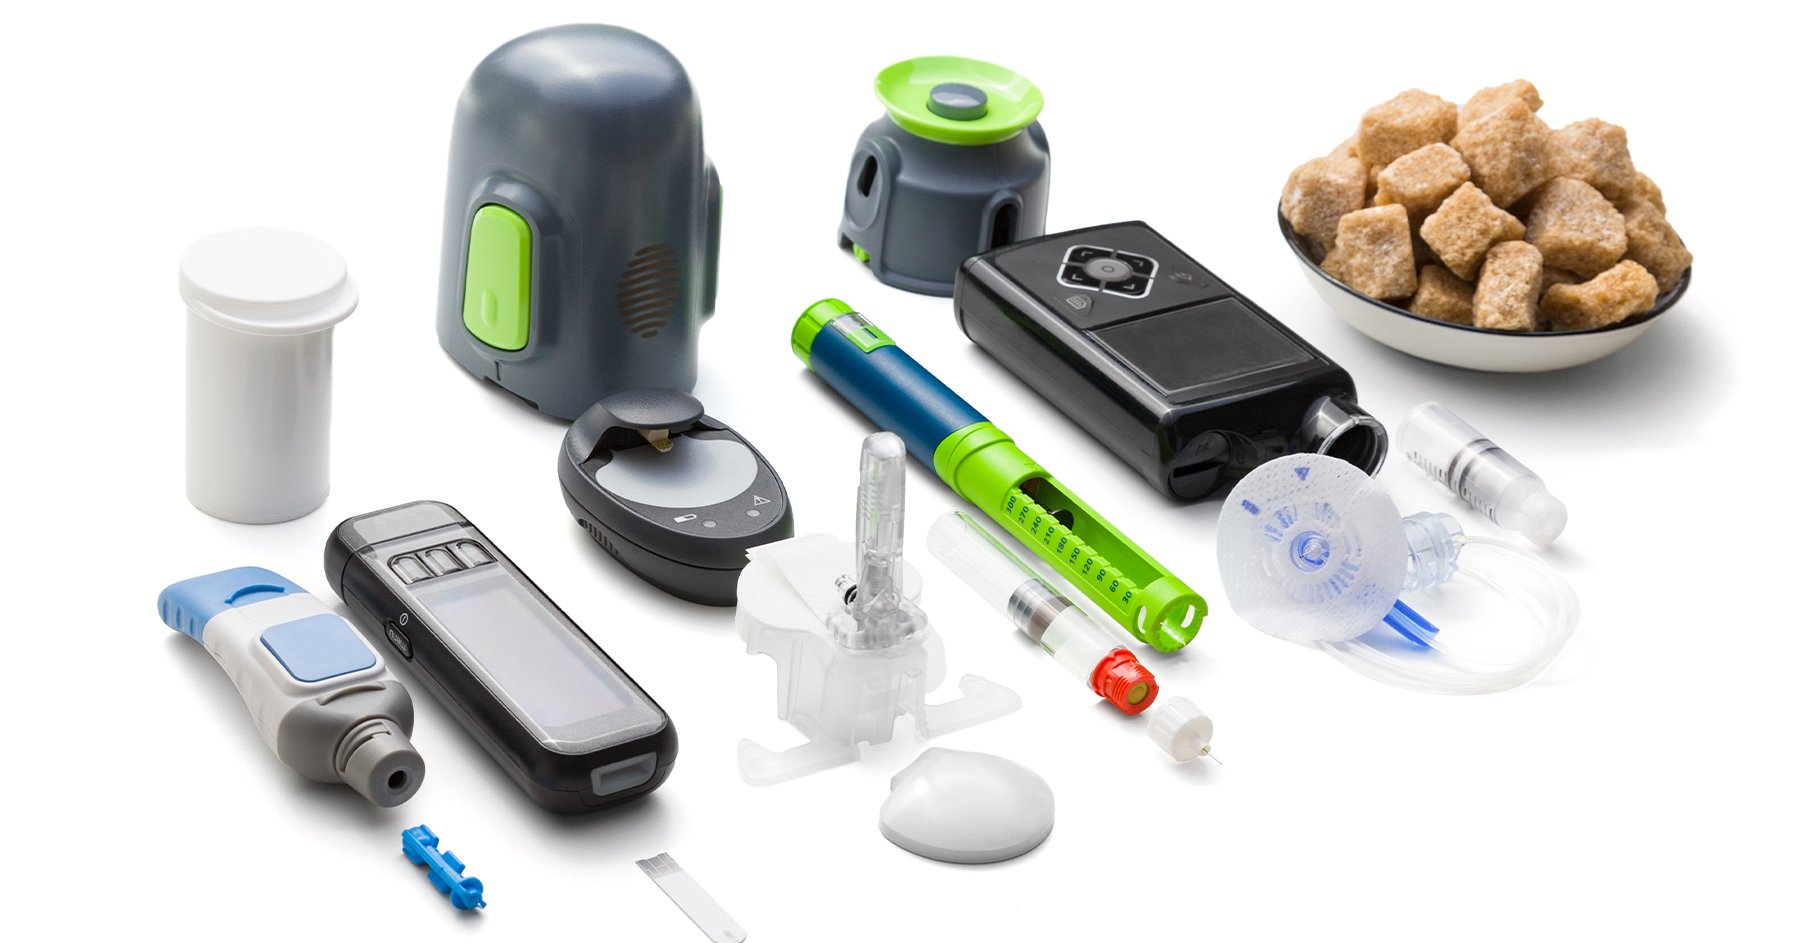 Image displaying various diabetes technologies.